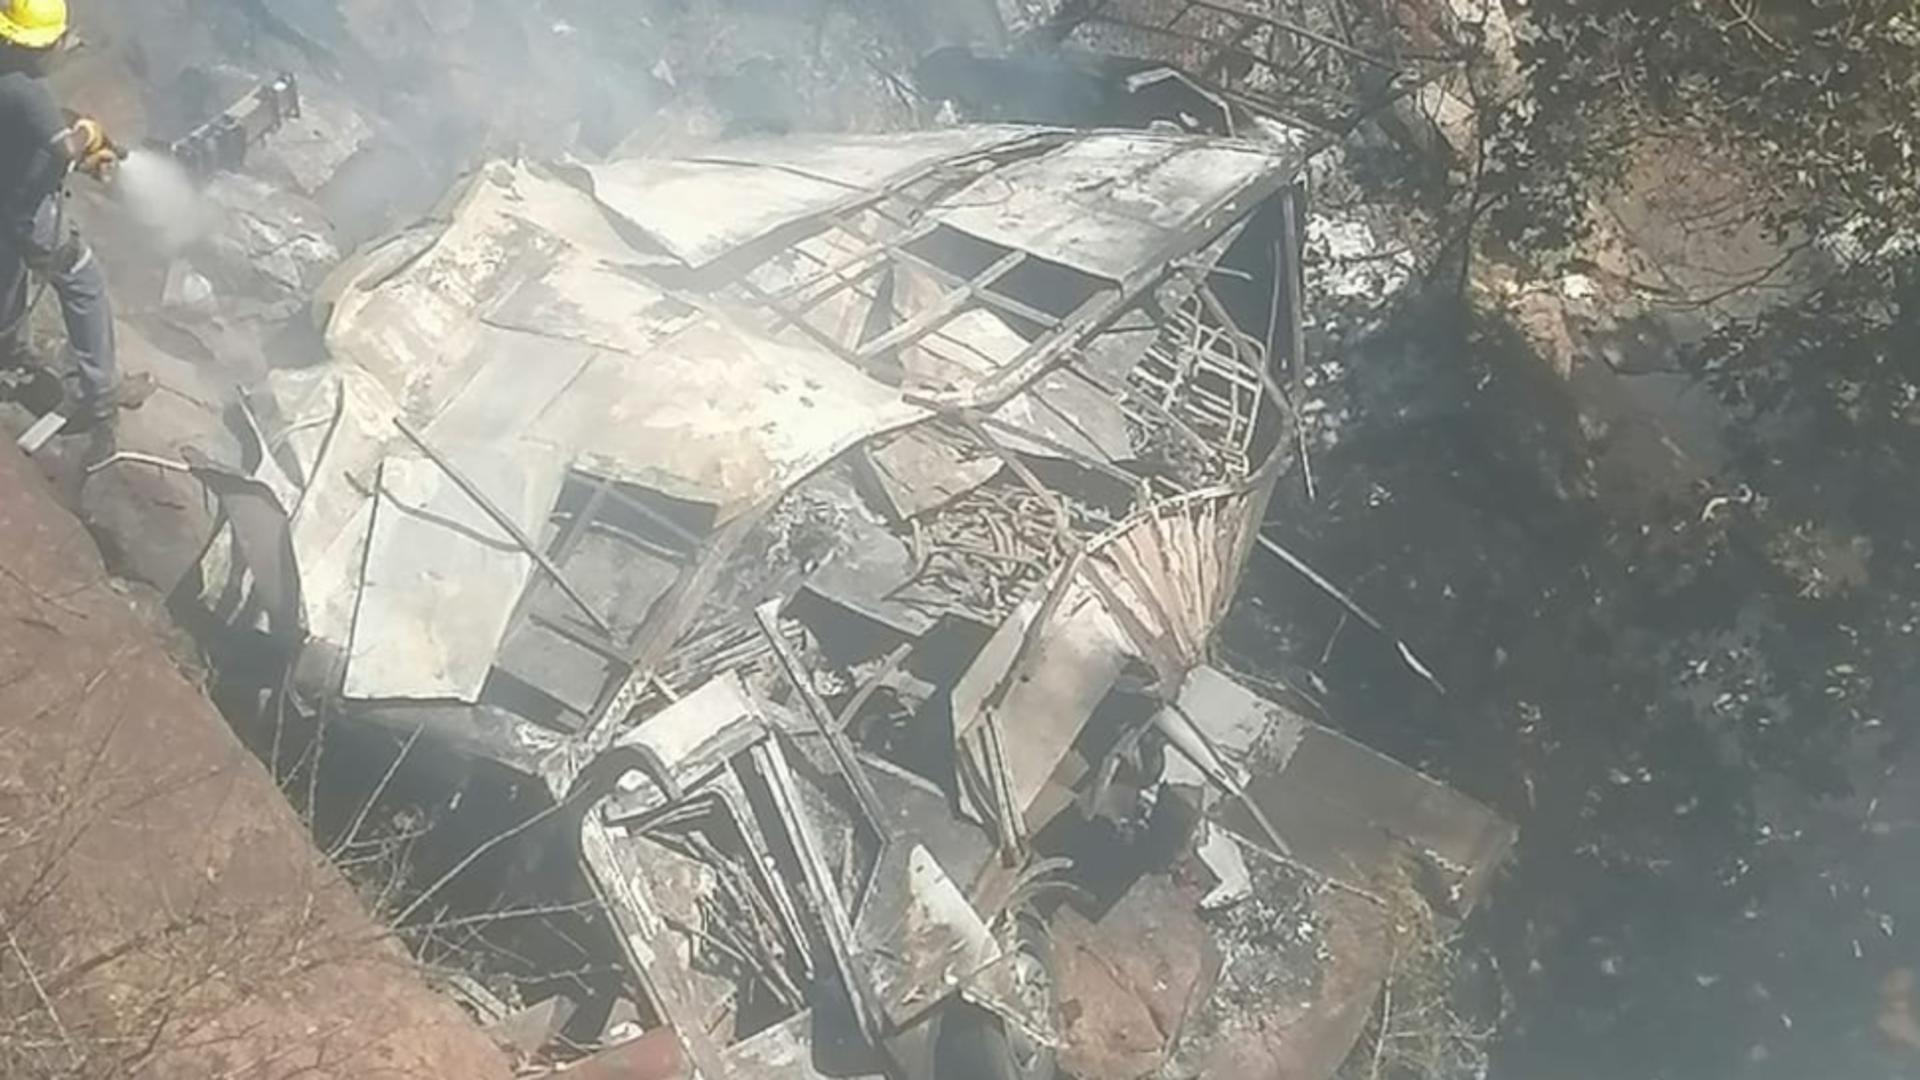 45 de oameni au murit, după ce un autobuz s-a prăbușit în gol, de la zeci de metri. Tragedie în Africa de Sud – VIDEO